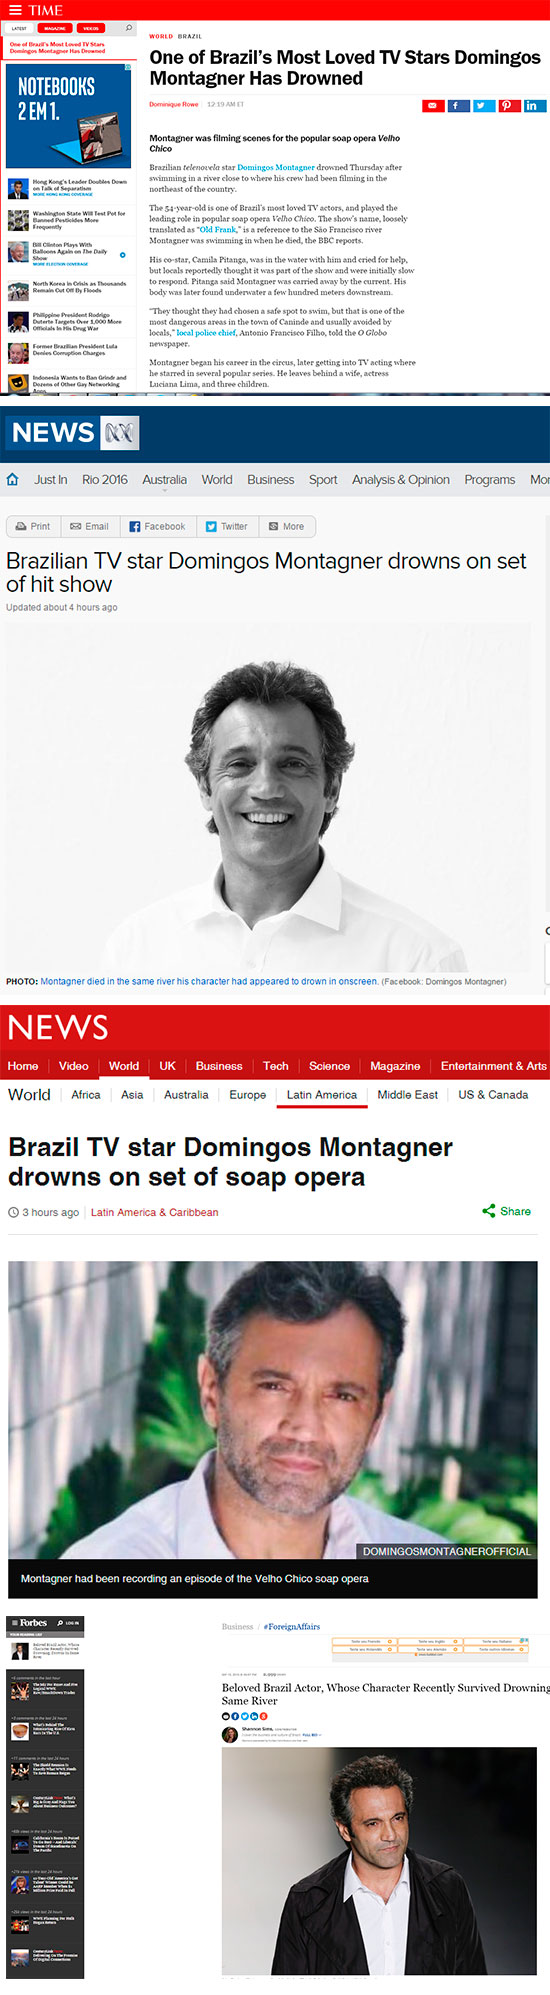 Imprensa internacional noticia a morte de Domingos Montagner